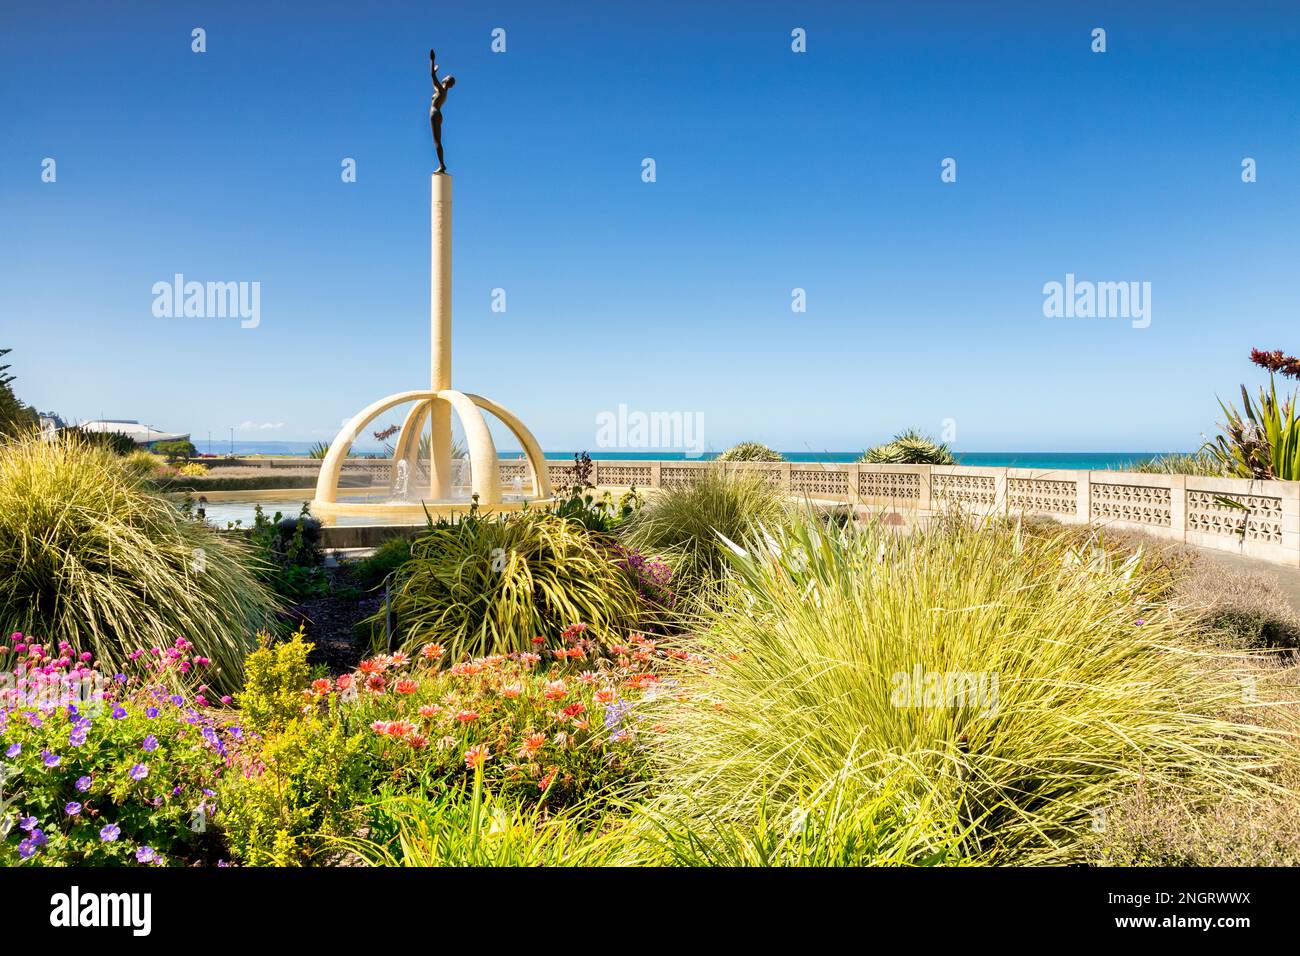 5. Dezember 2022: Napier, Hawkes Bay, Neuseeland - Pania of the Reef, Skulptur auf Marine Parade, in einem wunderschönen Garten gelegen. Herrliches Sommerwetter. Stockfoto